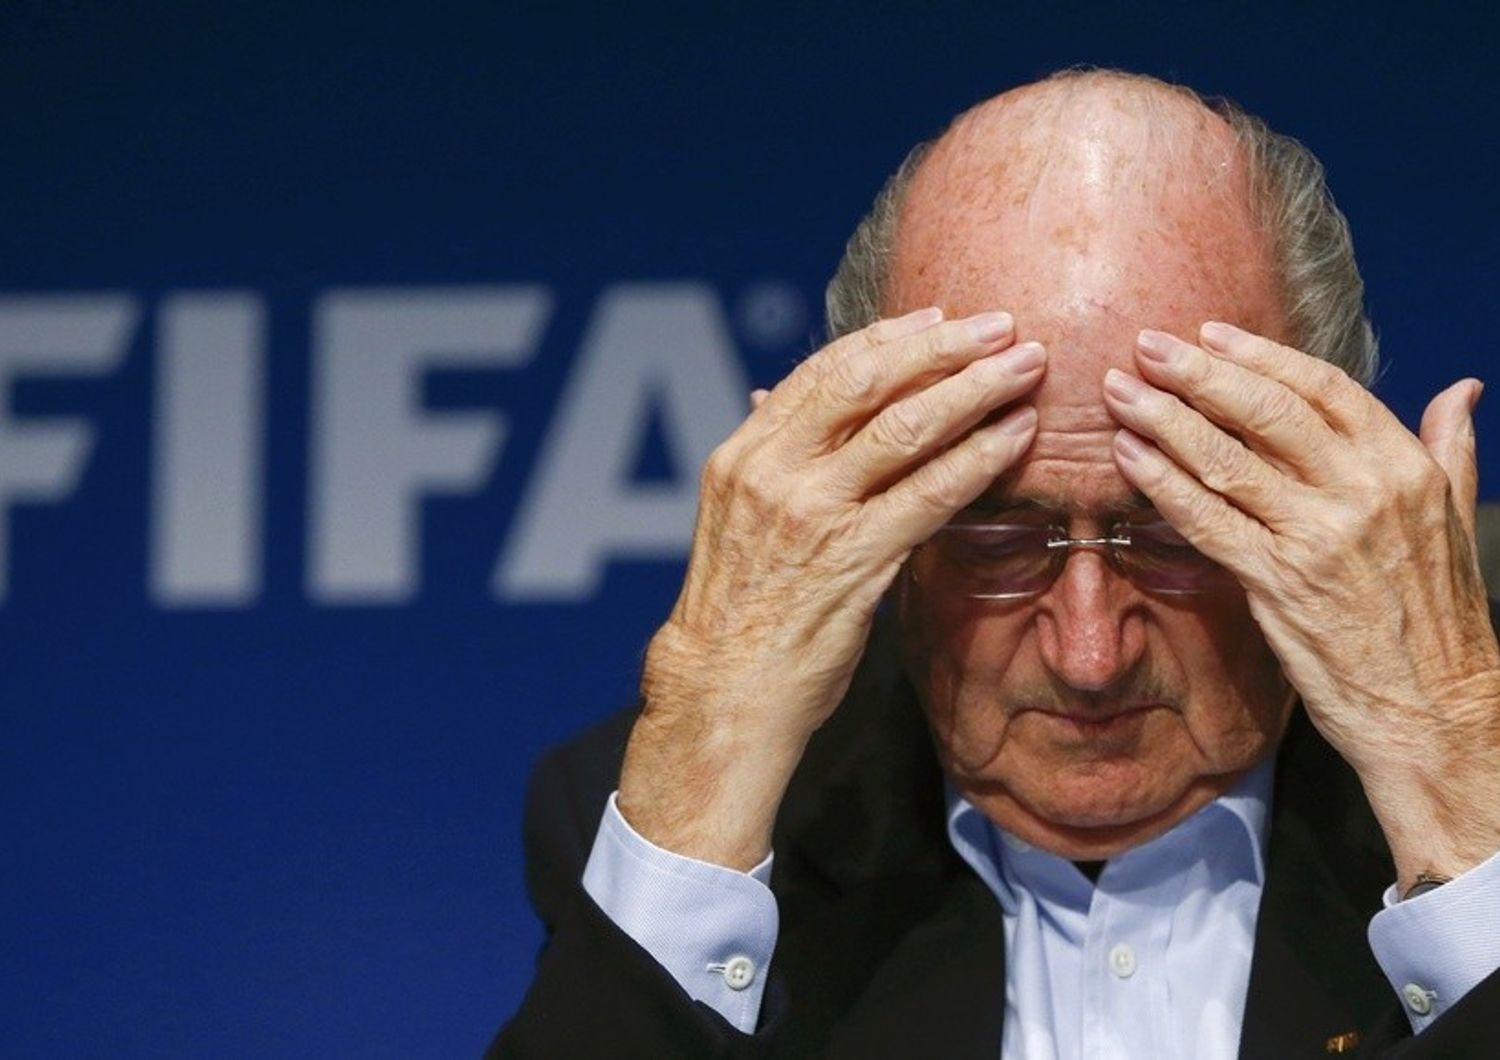 Tangenti Fifa: Blatter resiste Platini attacca, "Lo cacceremo"